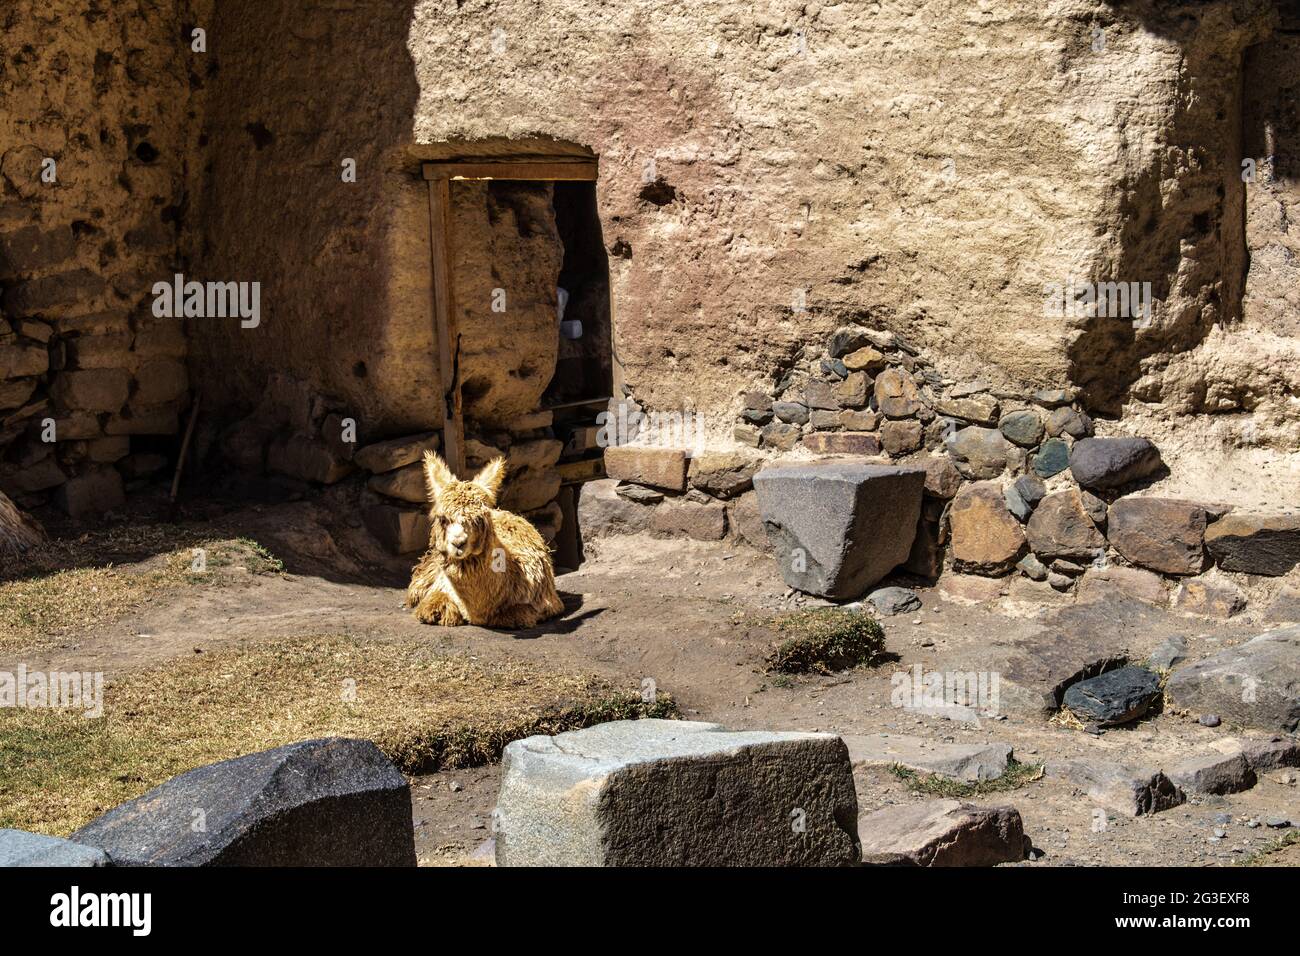 Llama resting at the Ollantaytambo ruins, Peru Stock Photo